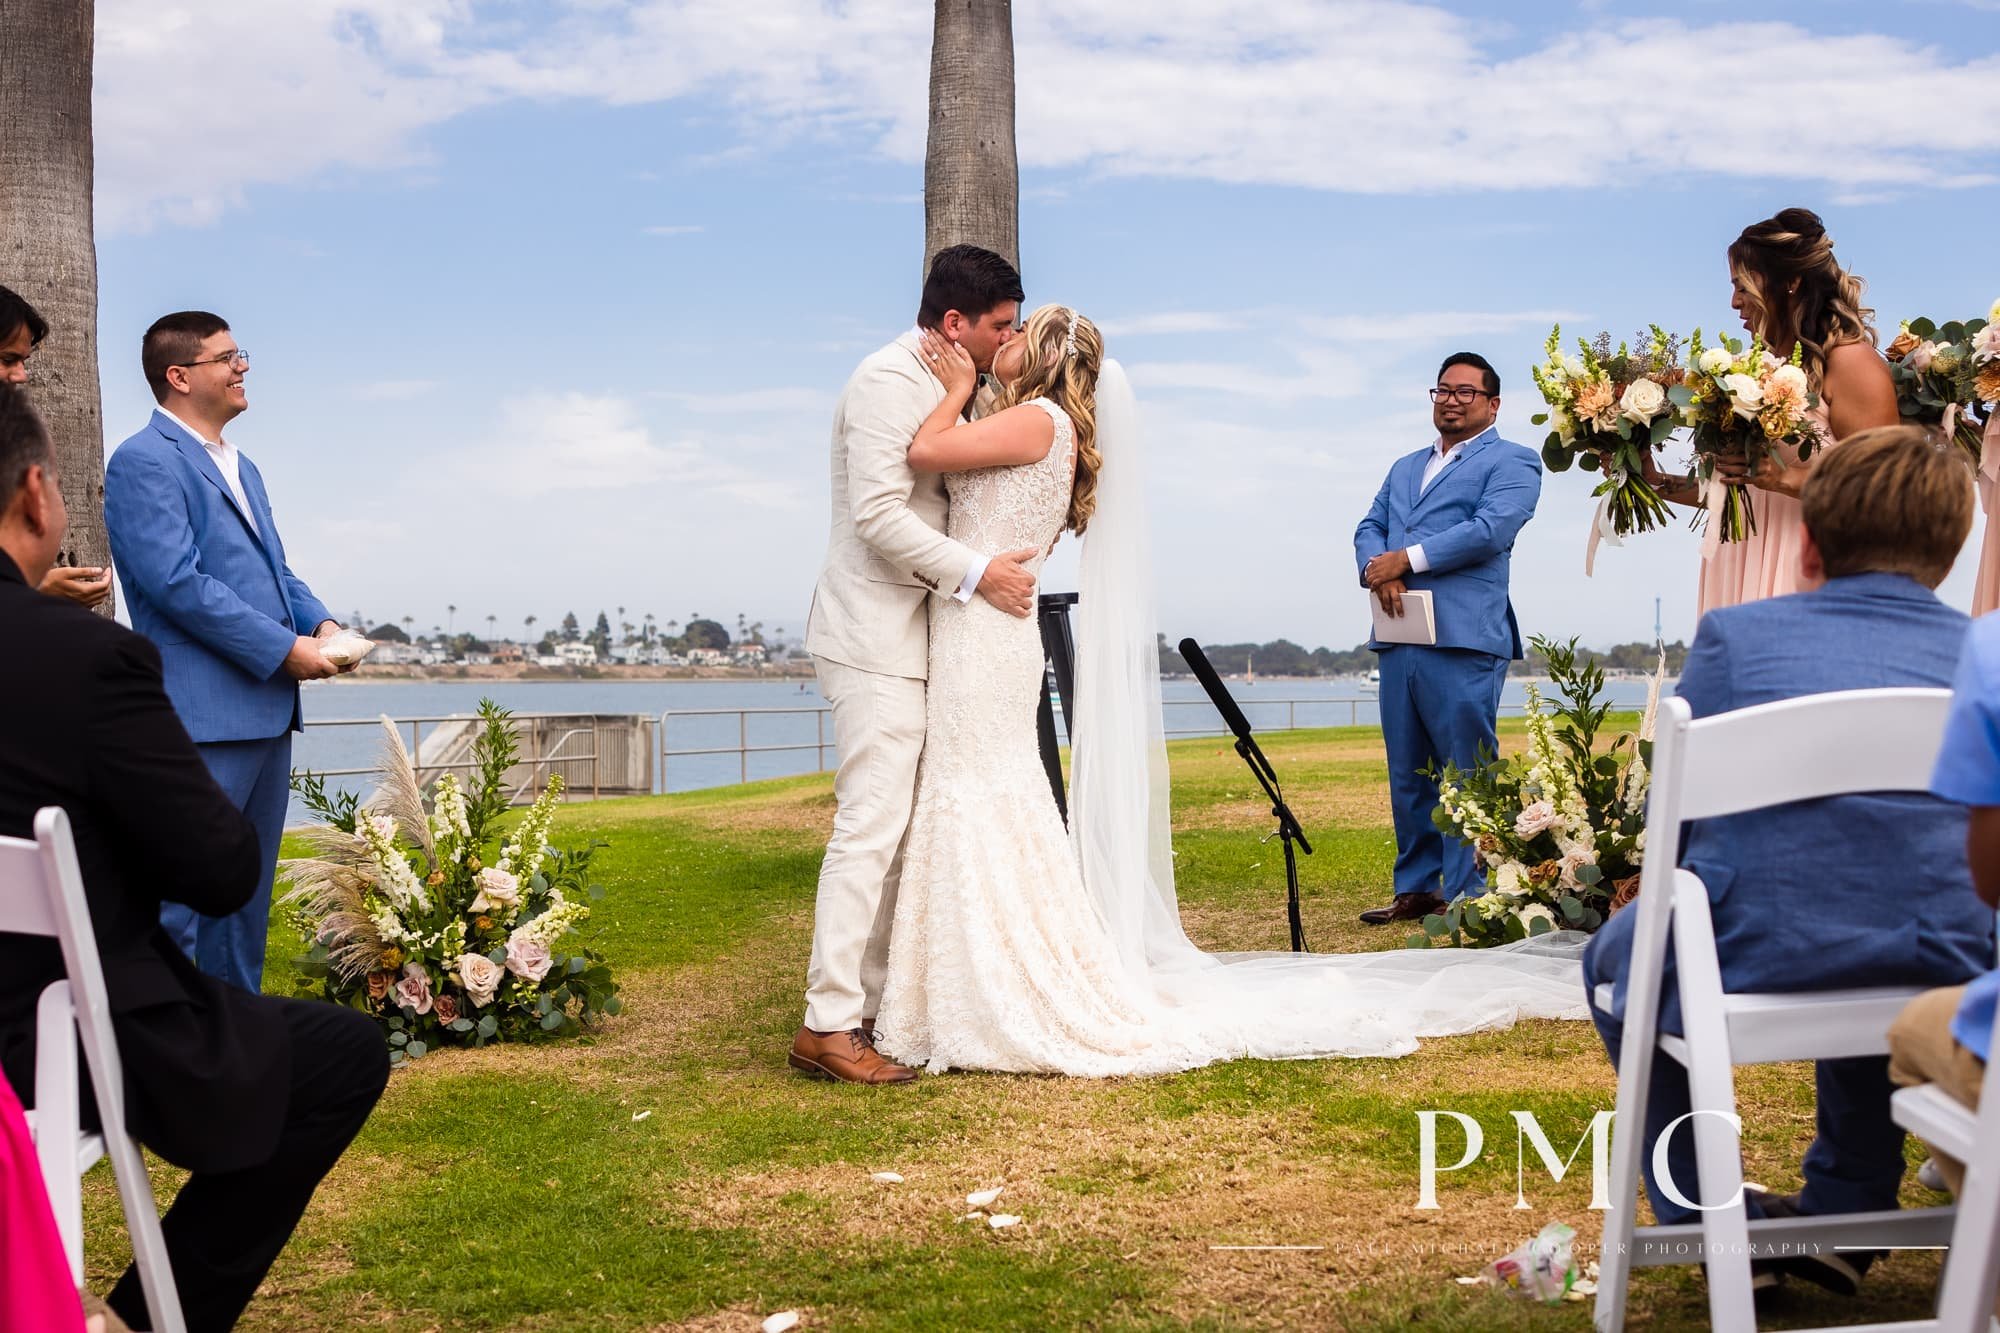 Tower Beach Club - Mission Bay Wedding - Best San Diego Wedding Photographer-20.jpg